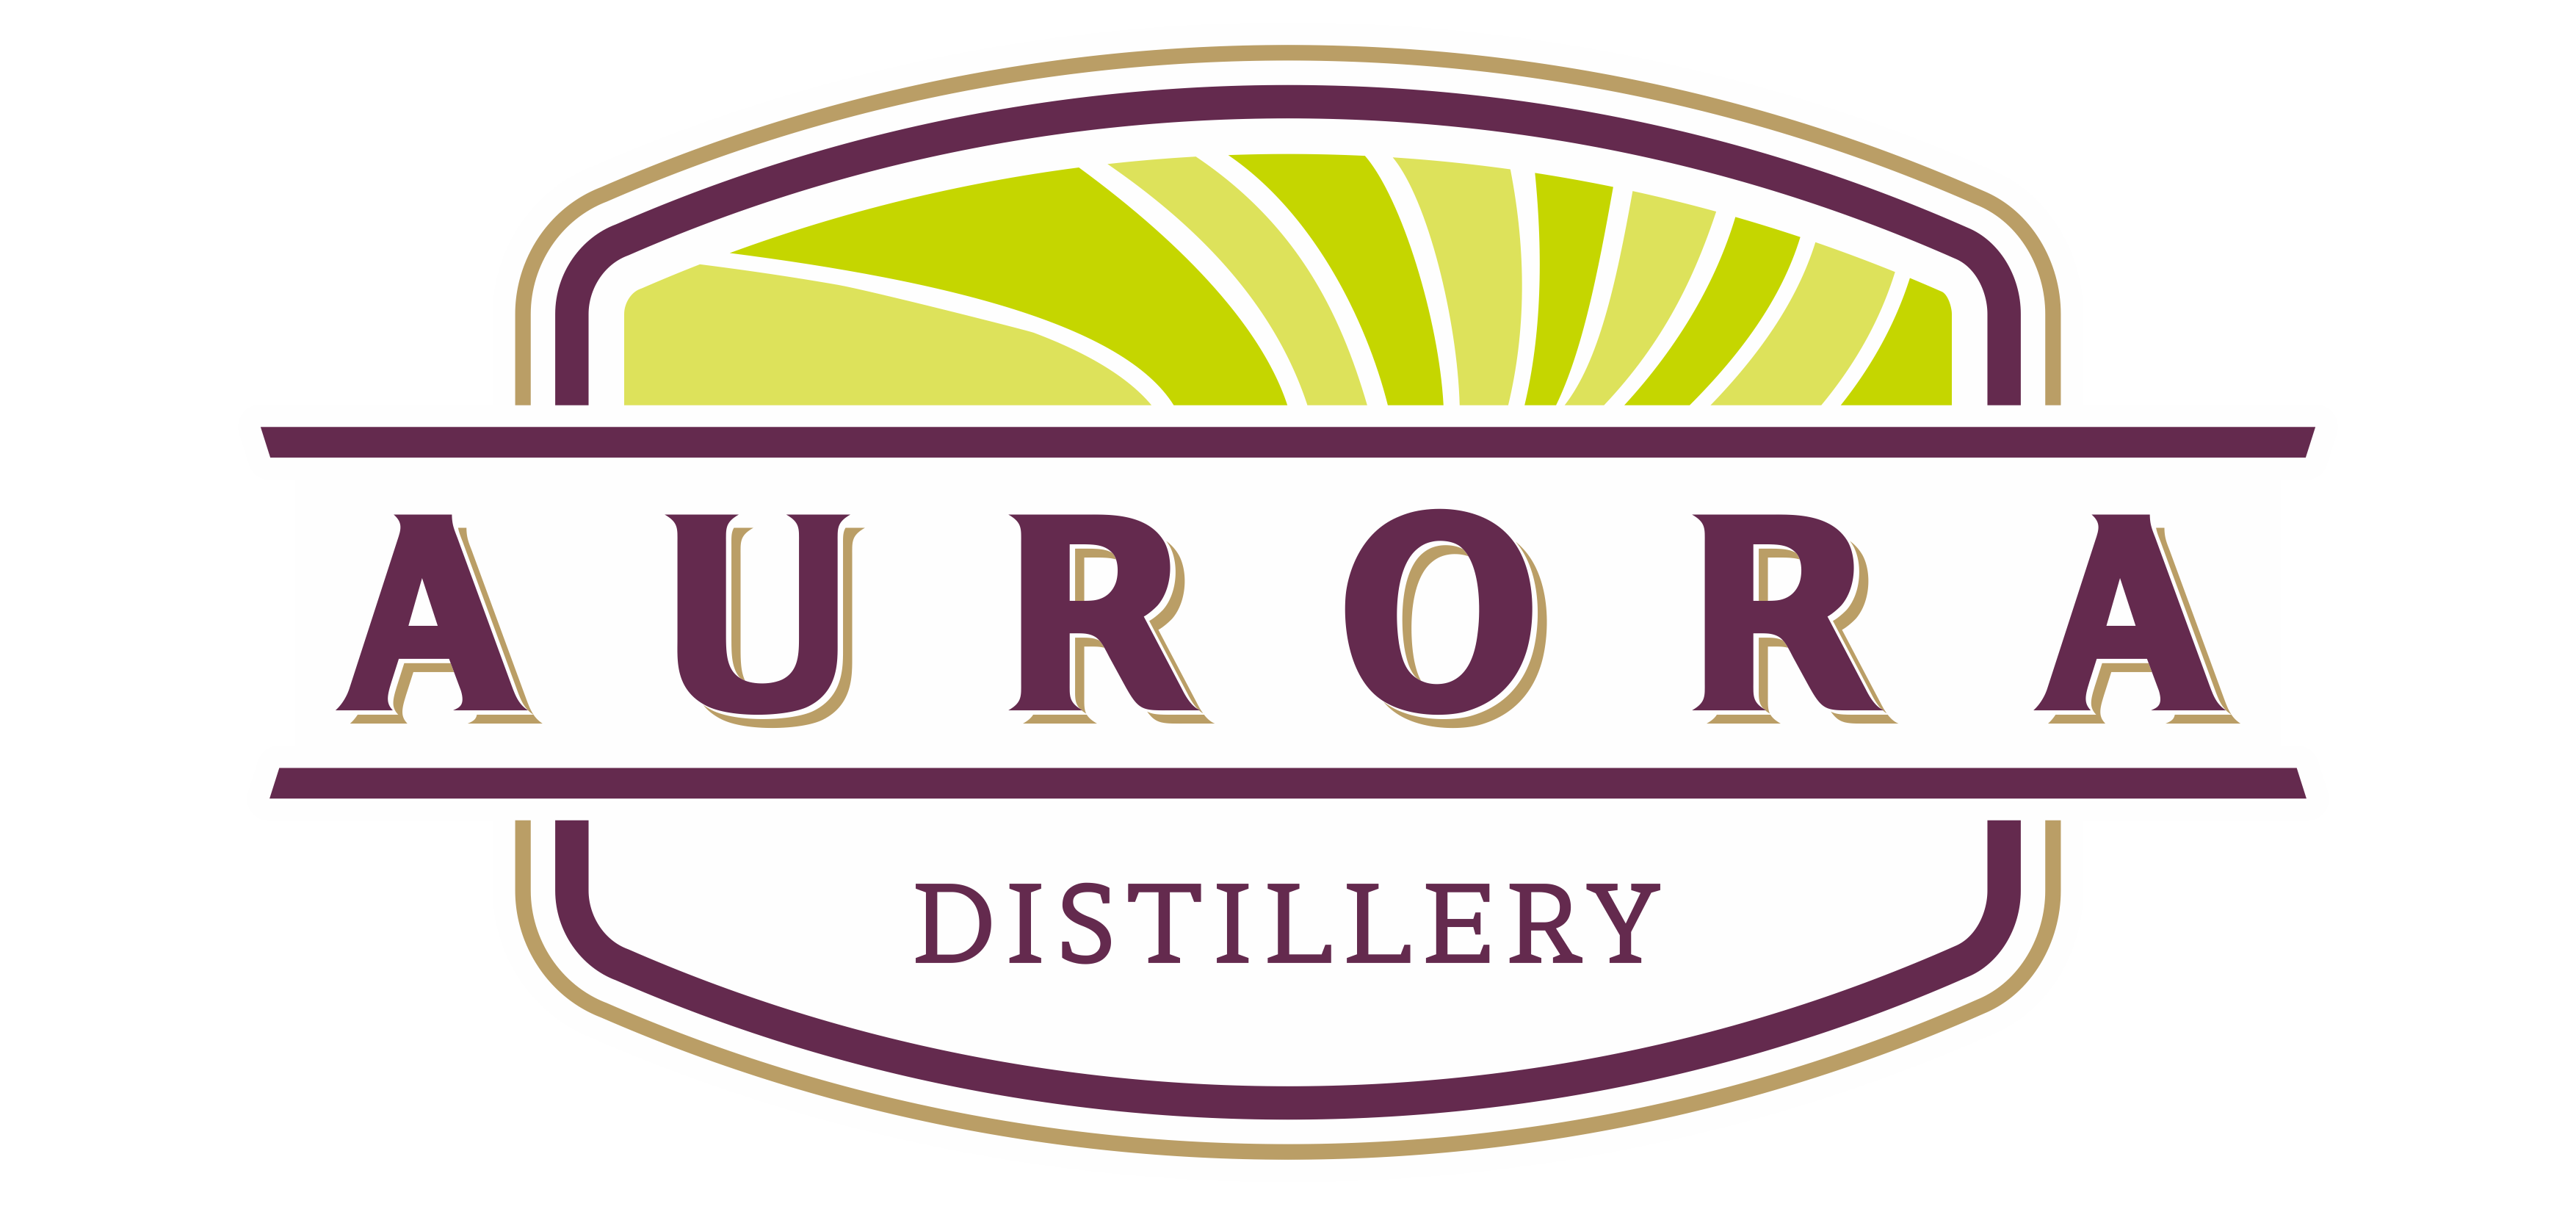 Aurora Distillery New Zealand